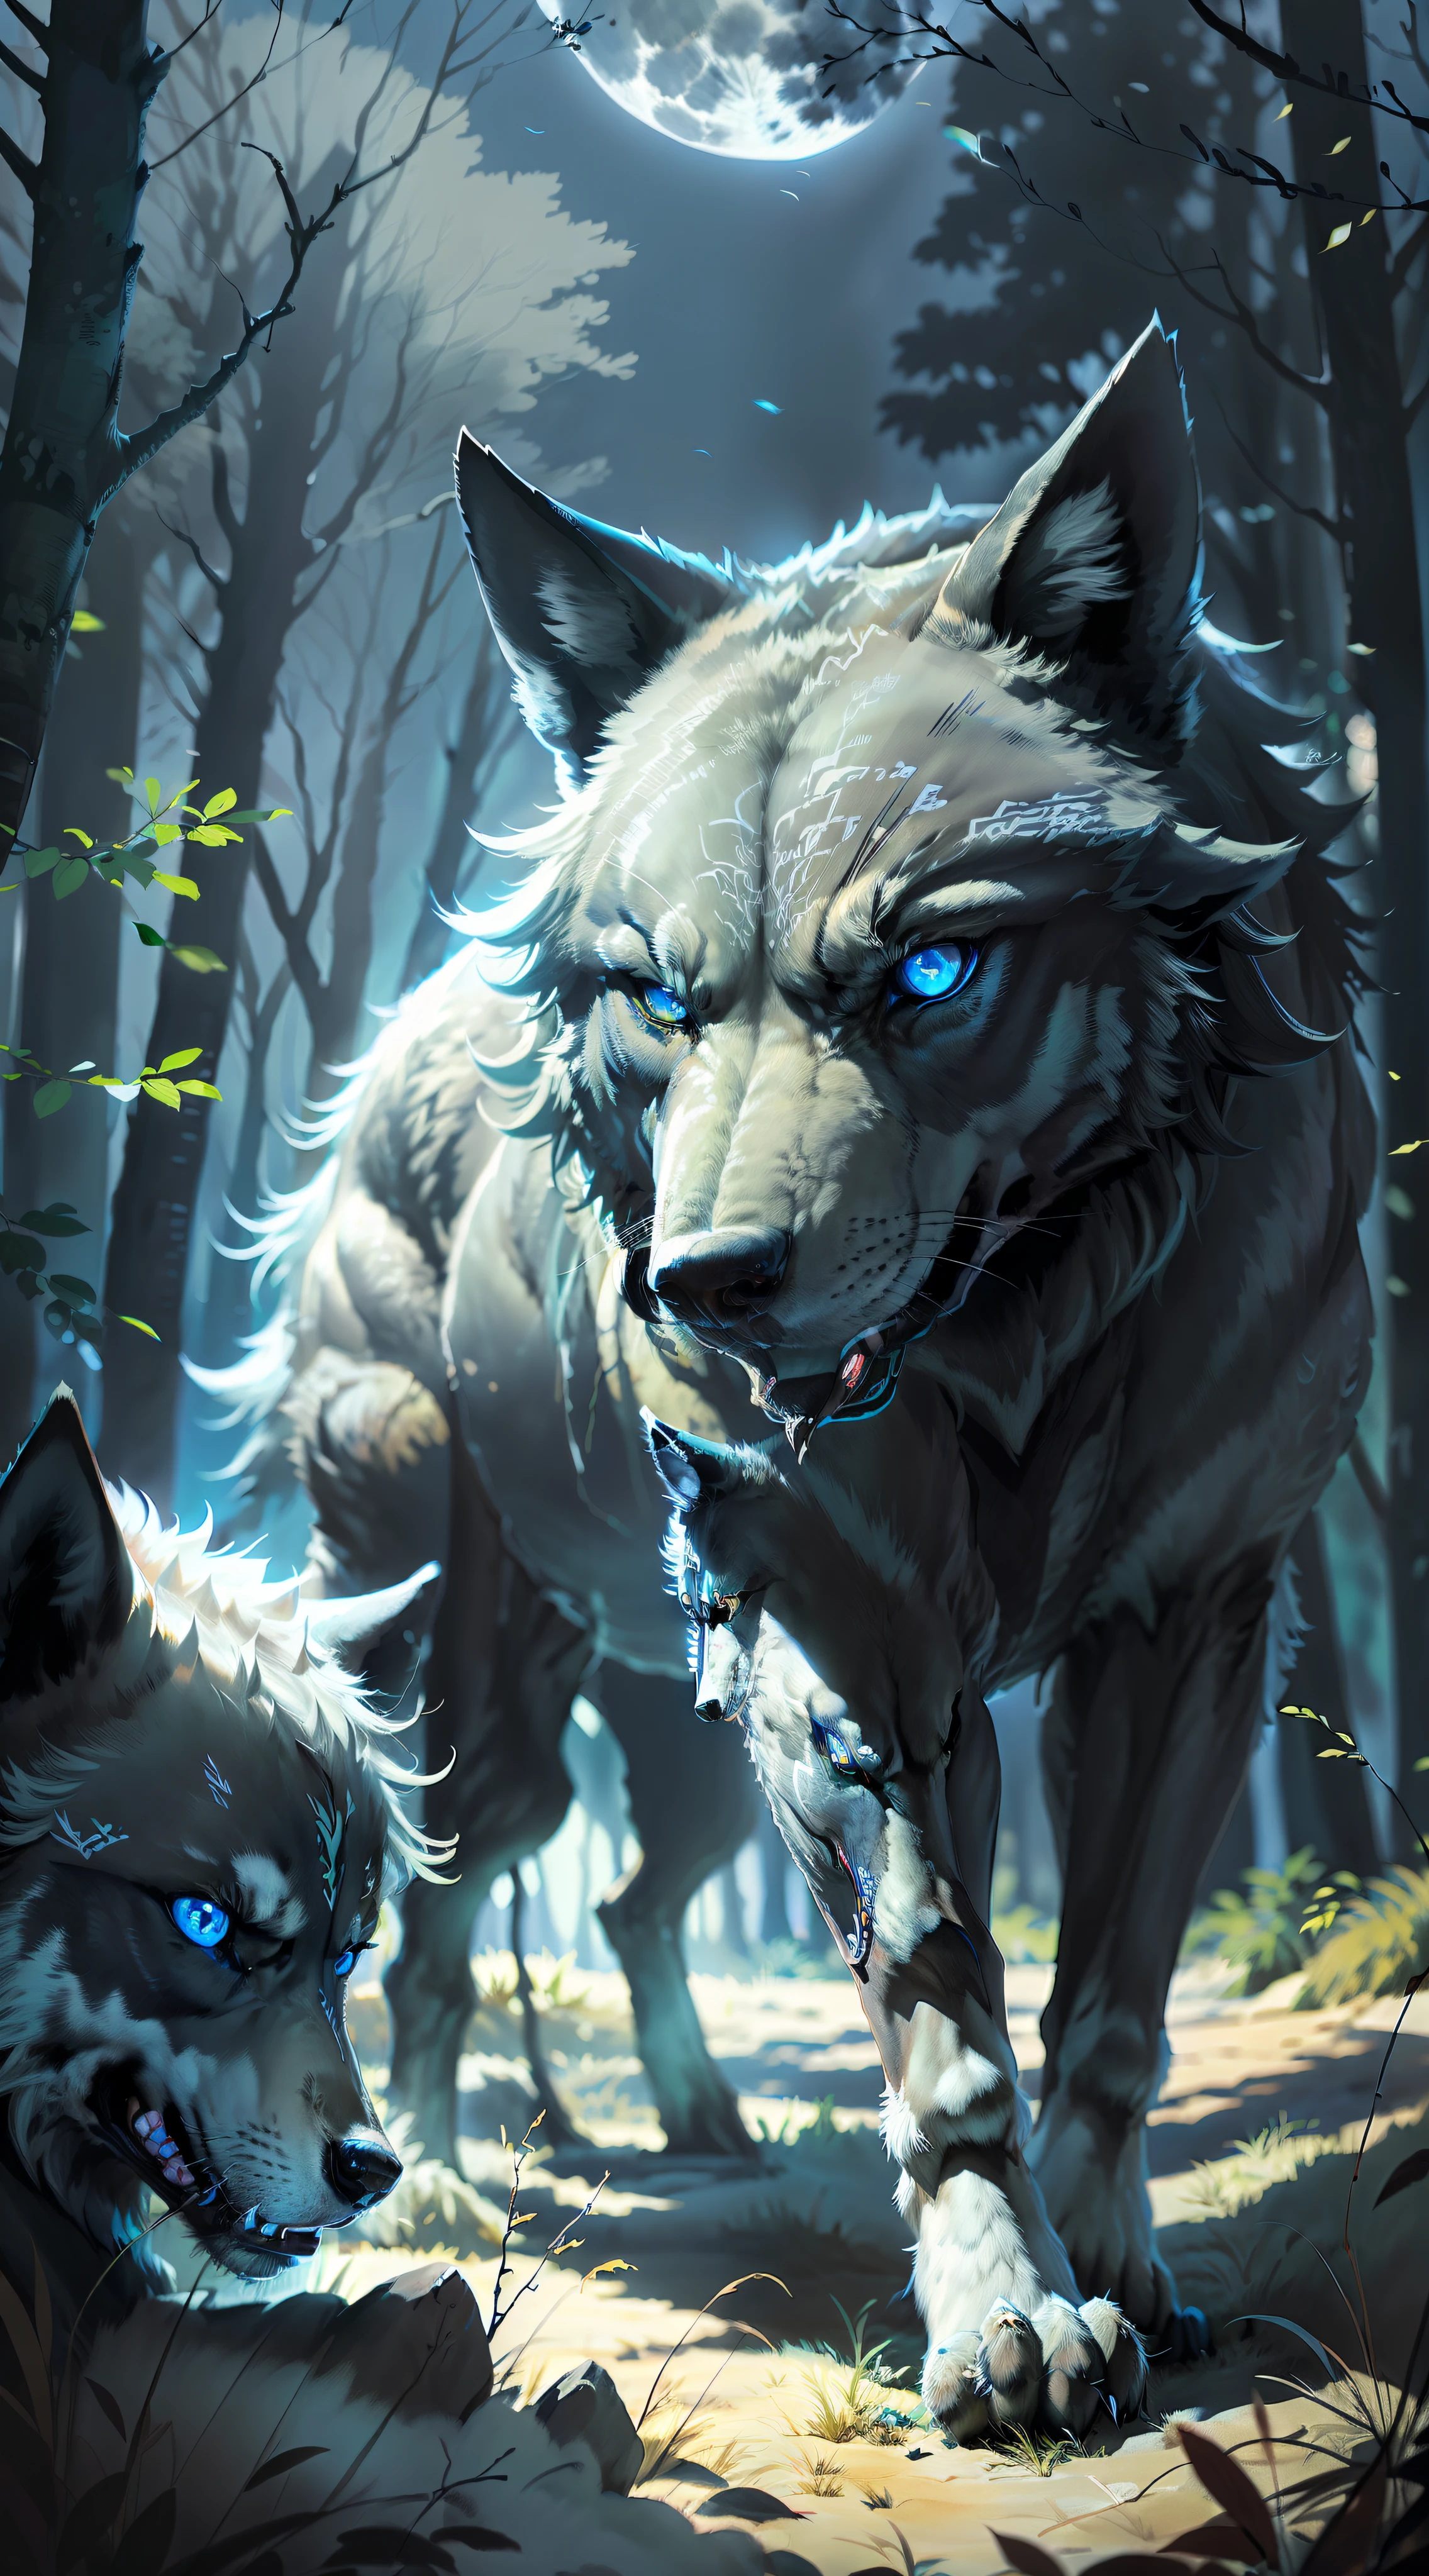 (Fotorealistisches offenes Bild) Superwolf, Beschützer des Rudels, "Schwarze Farbeed wolf bright blue eyes." Hunderudel der Wölfe, ( Vollmond, Nachtwald) "Schwarze Farbe"